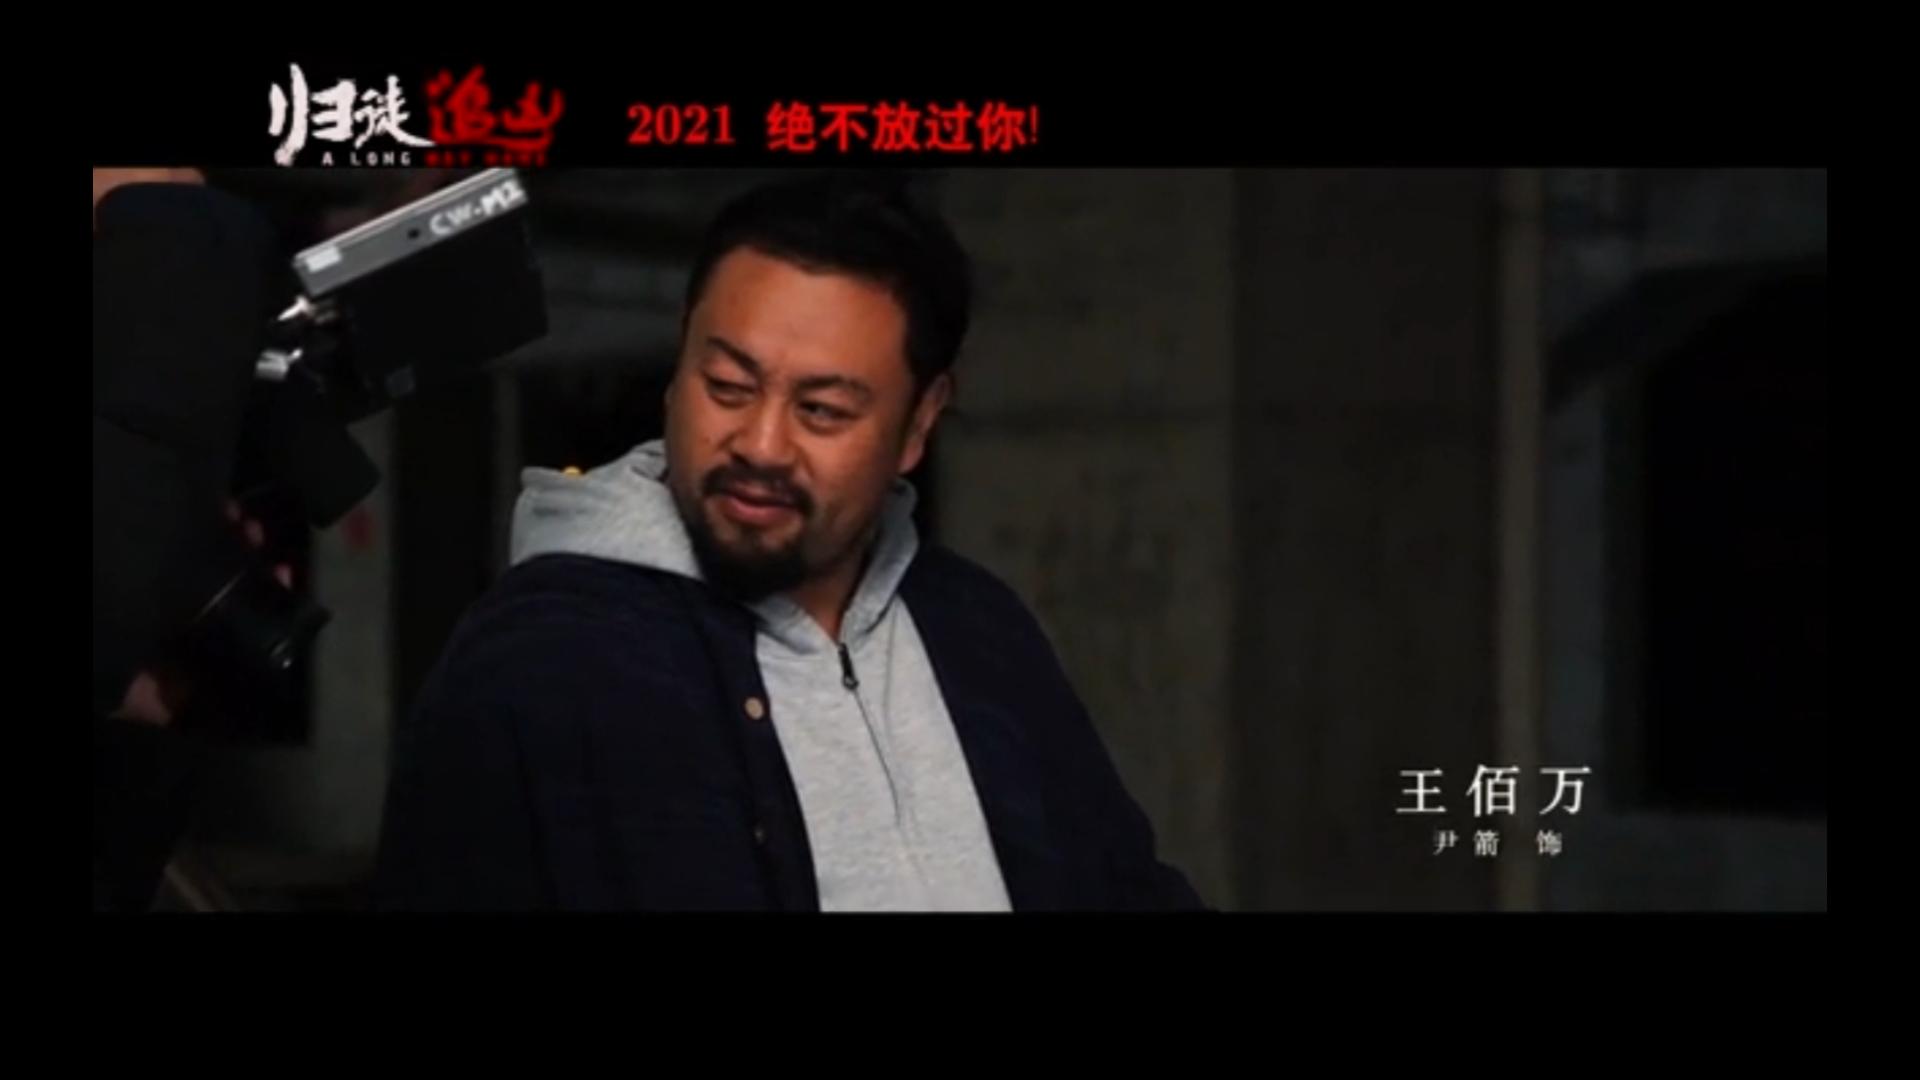 石杰导演！ 王培根 +张焱森 主演！犯罪类型题材《归徒追凶》2023年上映！